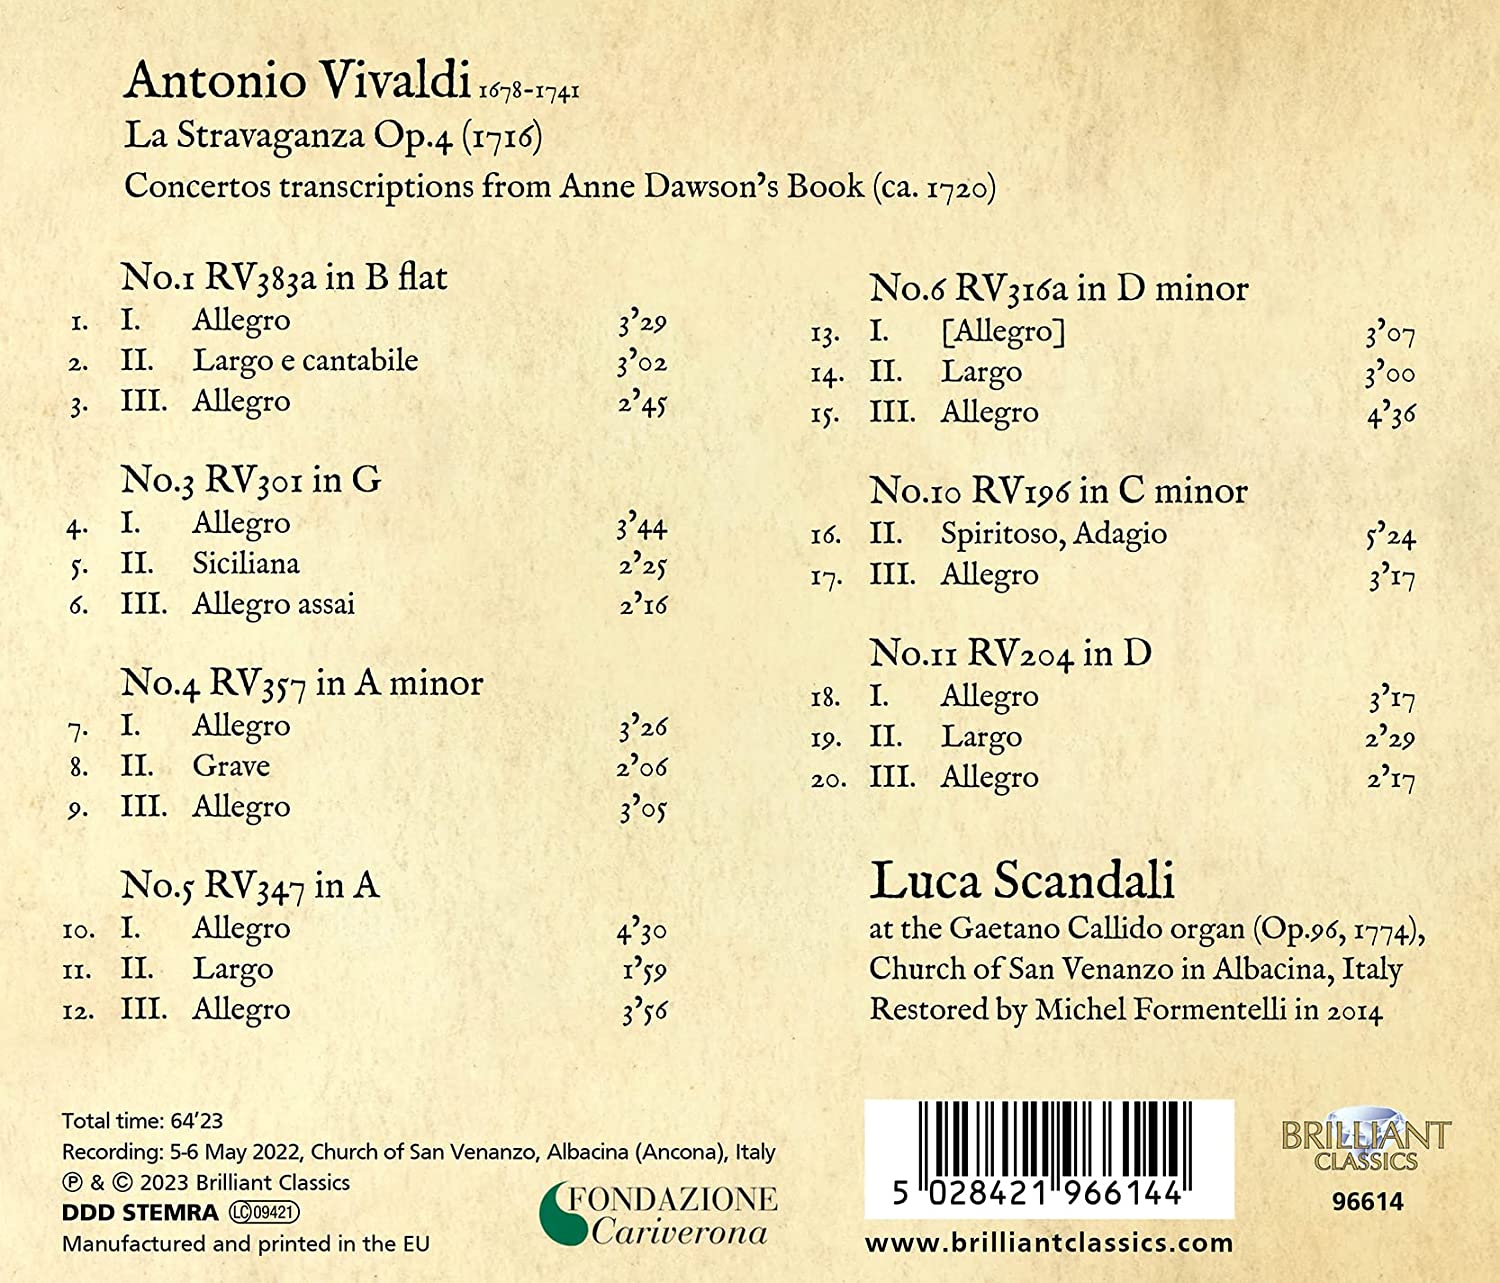 Luca Scandali 비발디: 라 스트라바간차 [오르간 편곡] (Vivaldi: La Stravaganza Op. 4, Transcriptions for Organ)